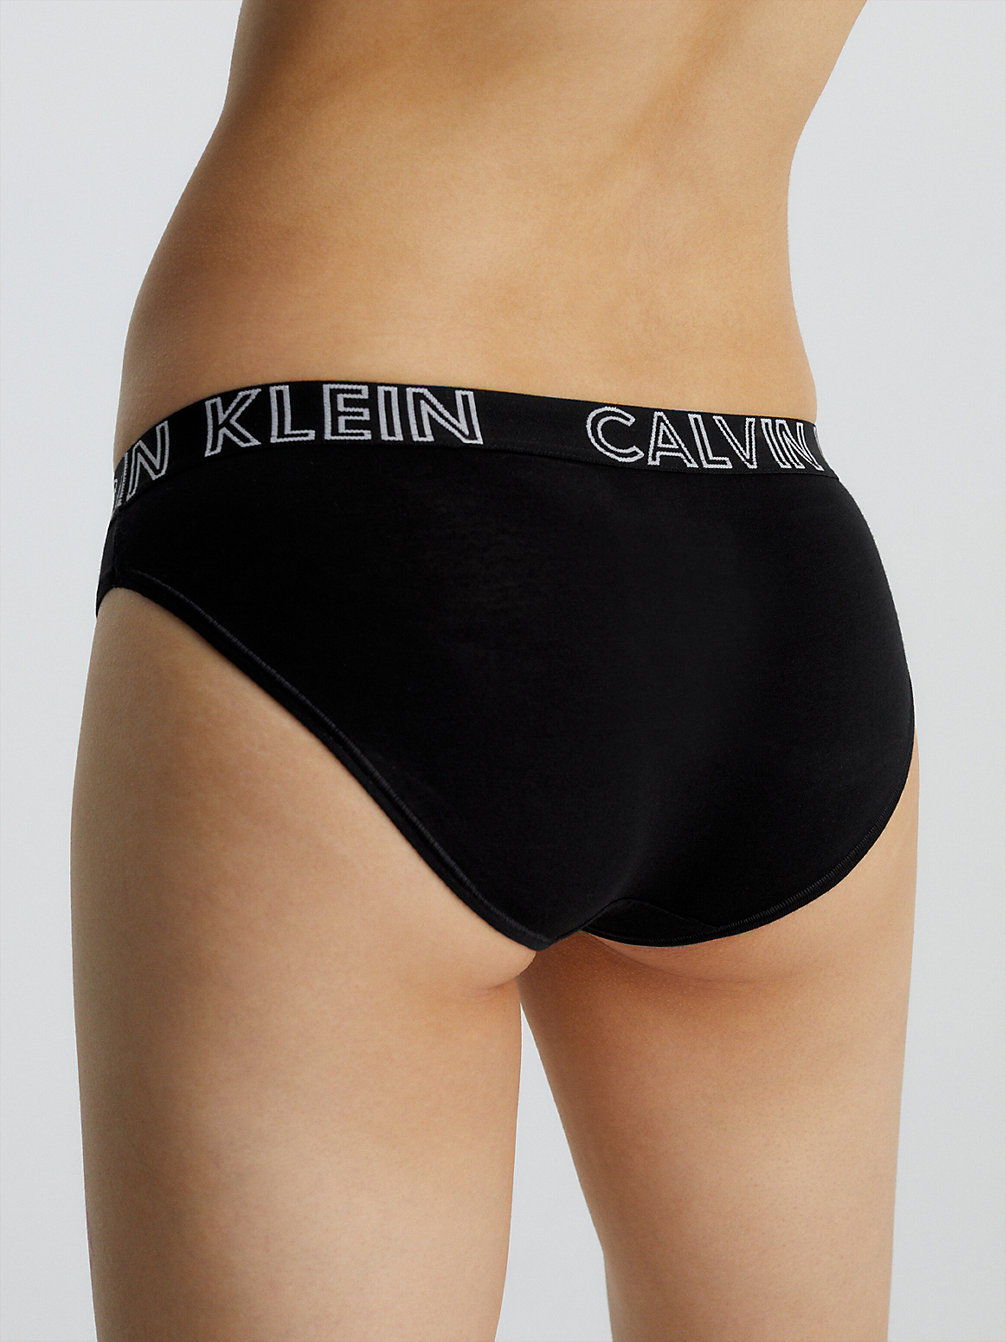 BLACK > Cлипы - Ultimate > undefined Женщины - Calvin Klein